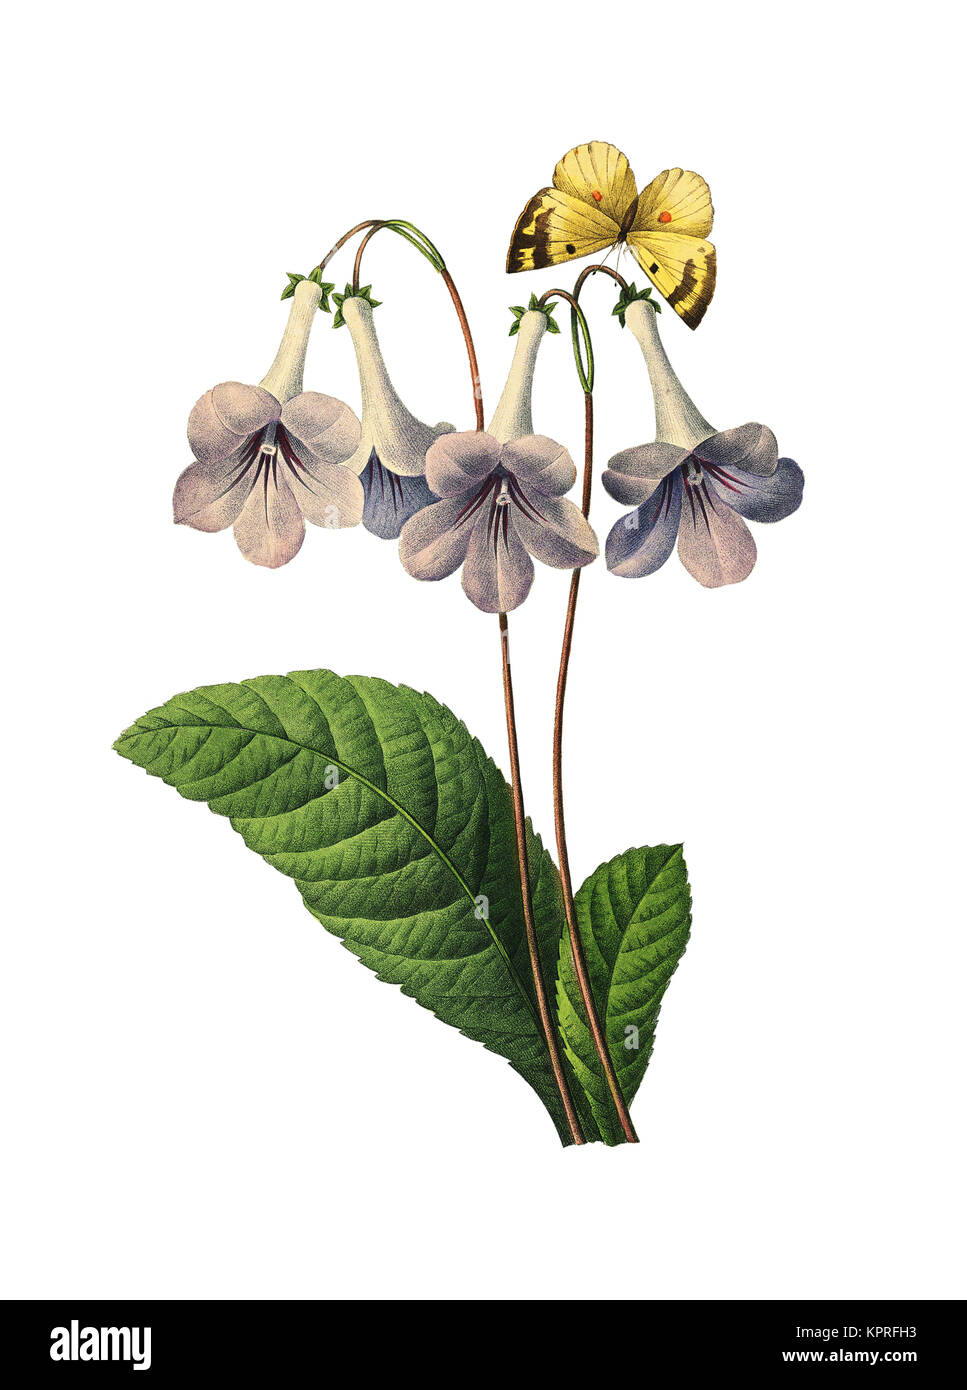 Botanische Illustration einer Gloxinienblume aus dem 19.. Jahrhundert. Stich von Pierre-Joseph Redoute. Veröffentlicht in Choix des Plus Belles Fleurs, Paris (1827). Stockfoto